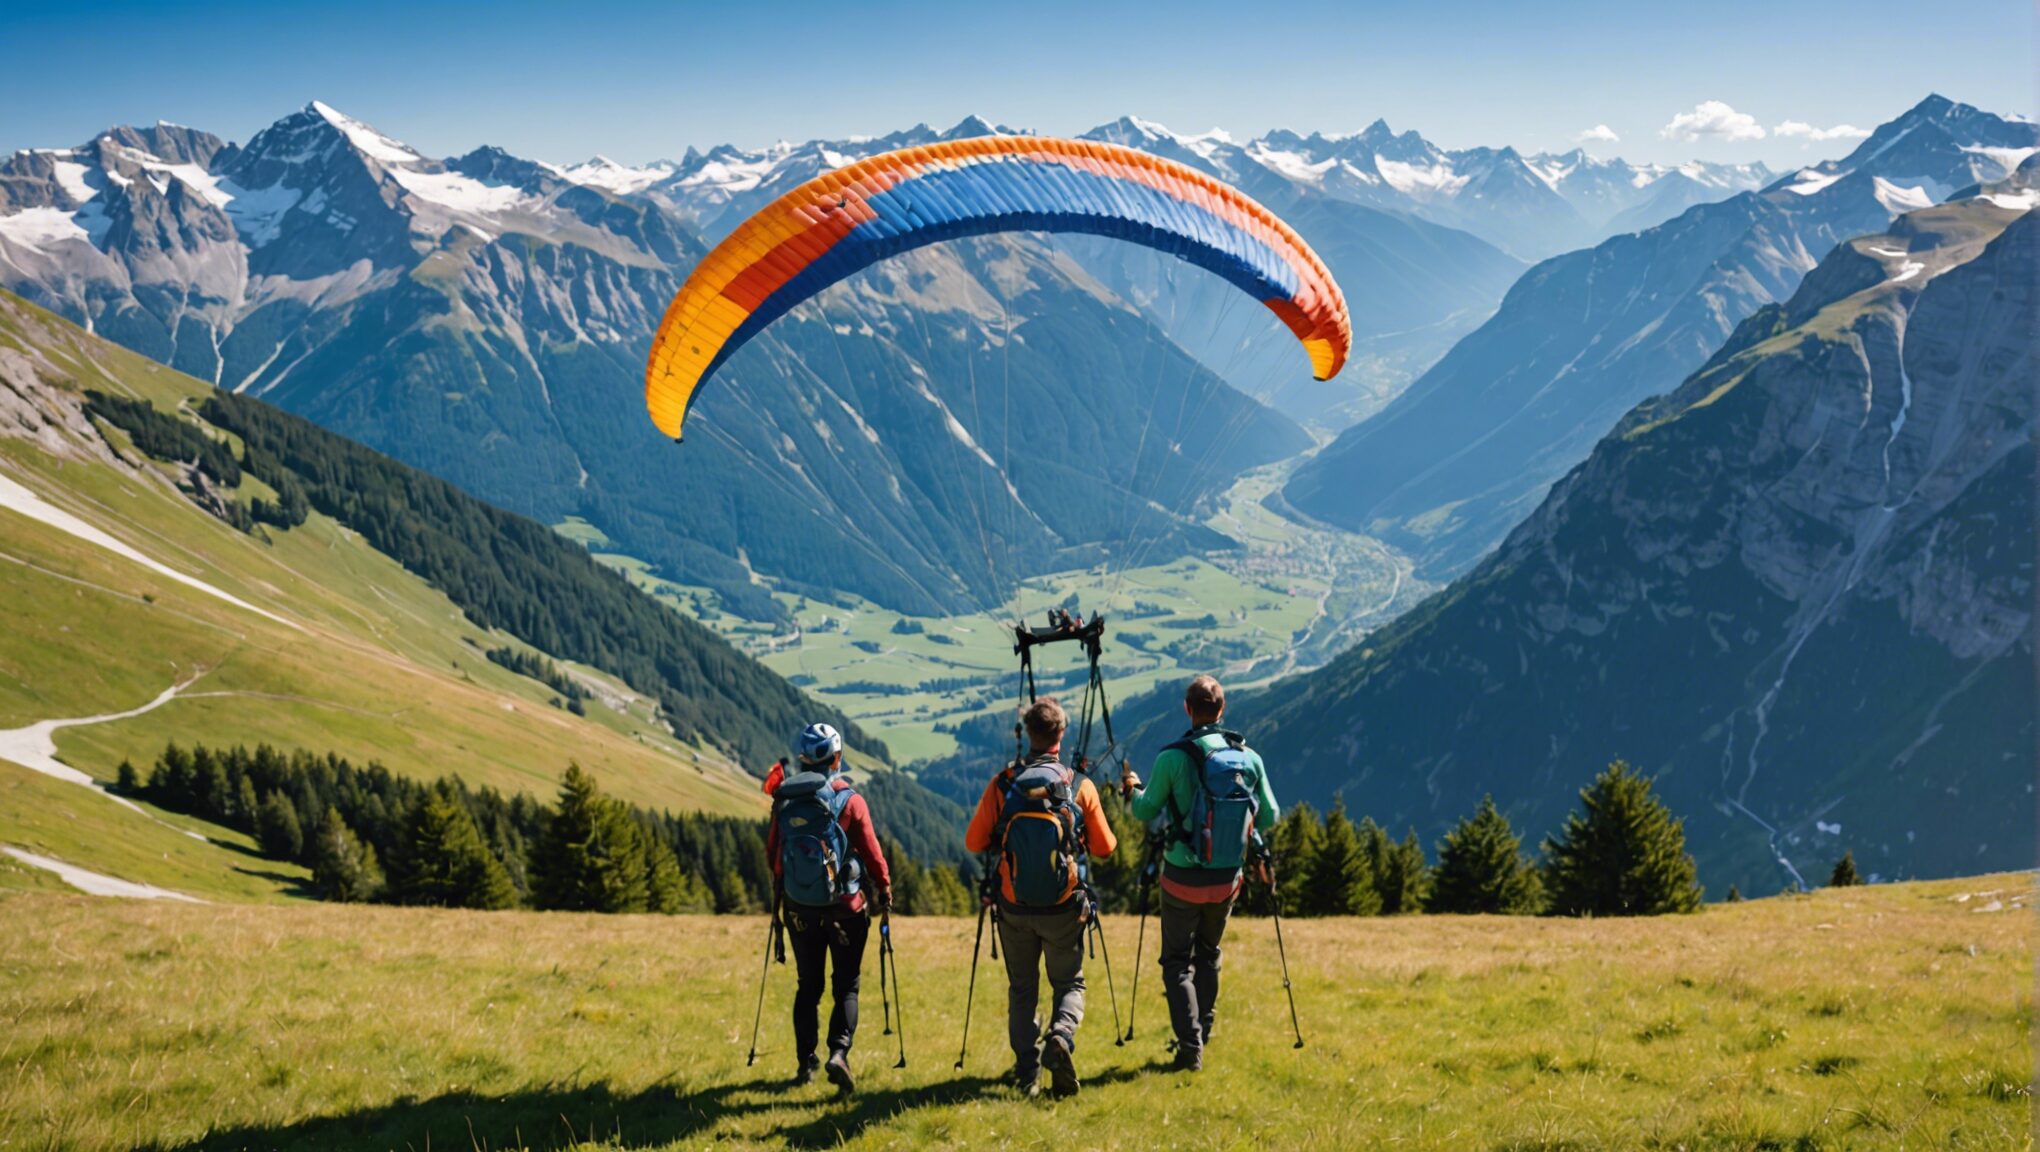 découvrez comment vivre une aventure inoubliable en famille à haute altitude en pratiquant le parapente dans les majestueuses alpes.